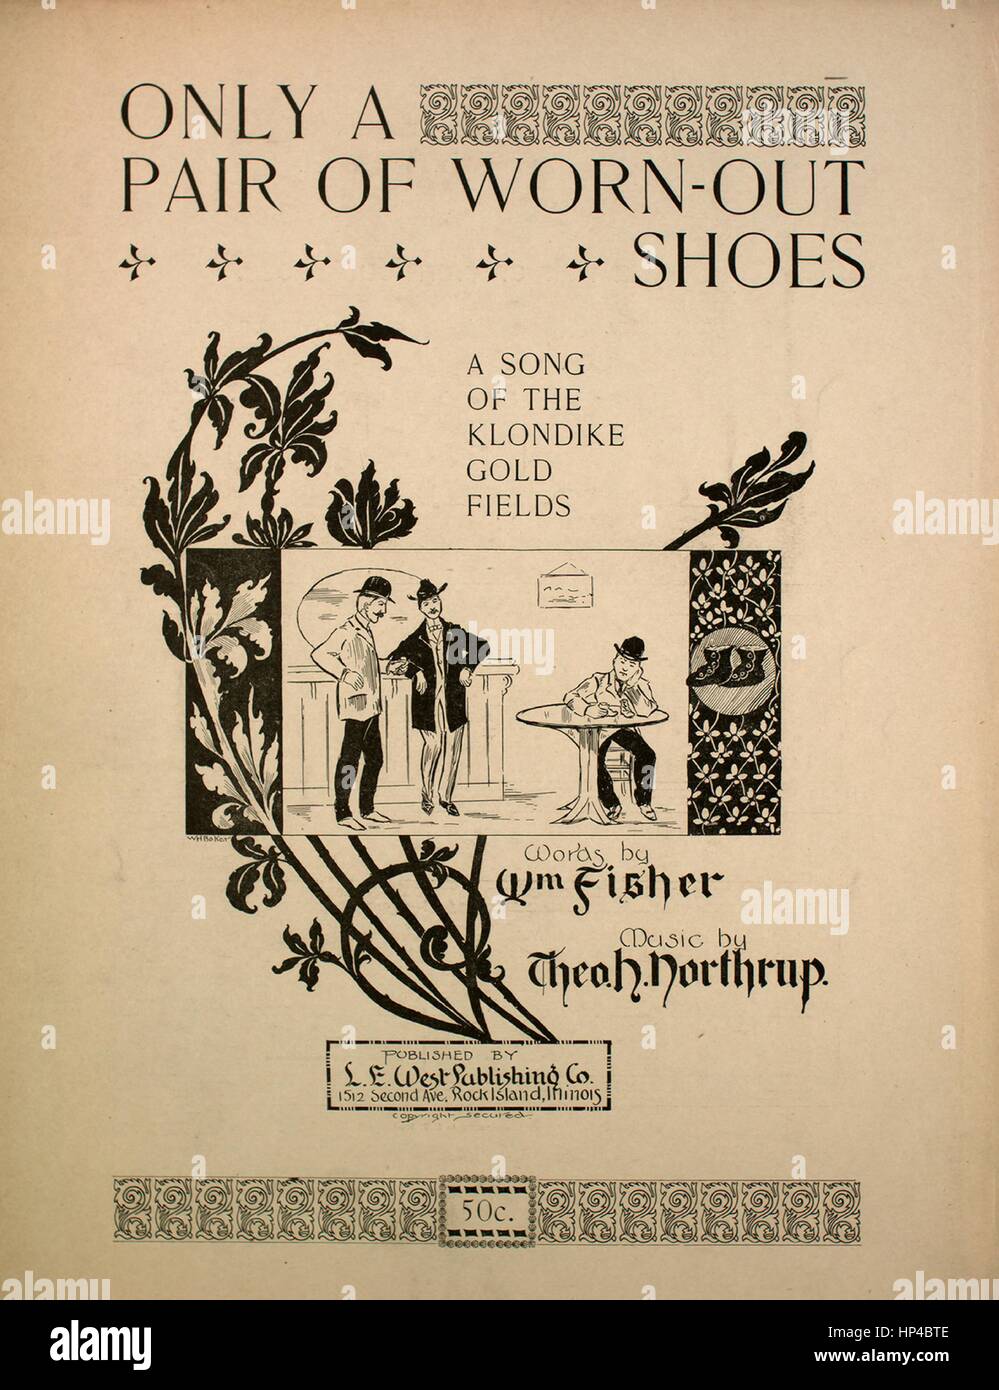 Imagen de cubierta de partituras de la canción "Sólo un par de zapatos  Worn-Out una canción del Klondike Gold Fields", con notas de autoría  original leyendo 'palabras por Wm Fisher música por